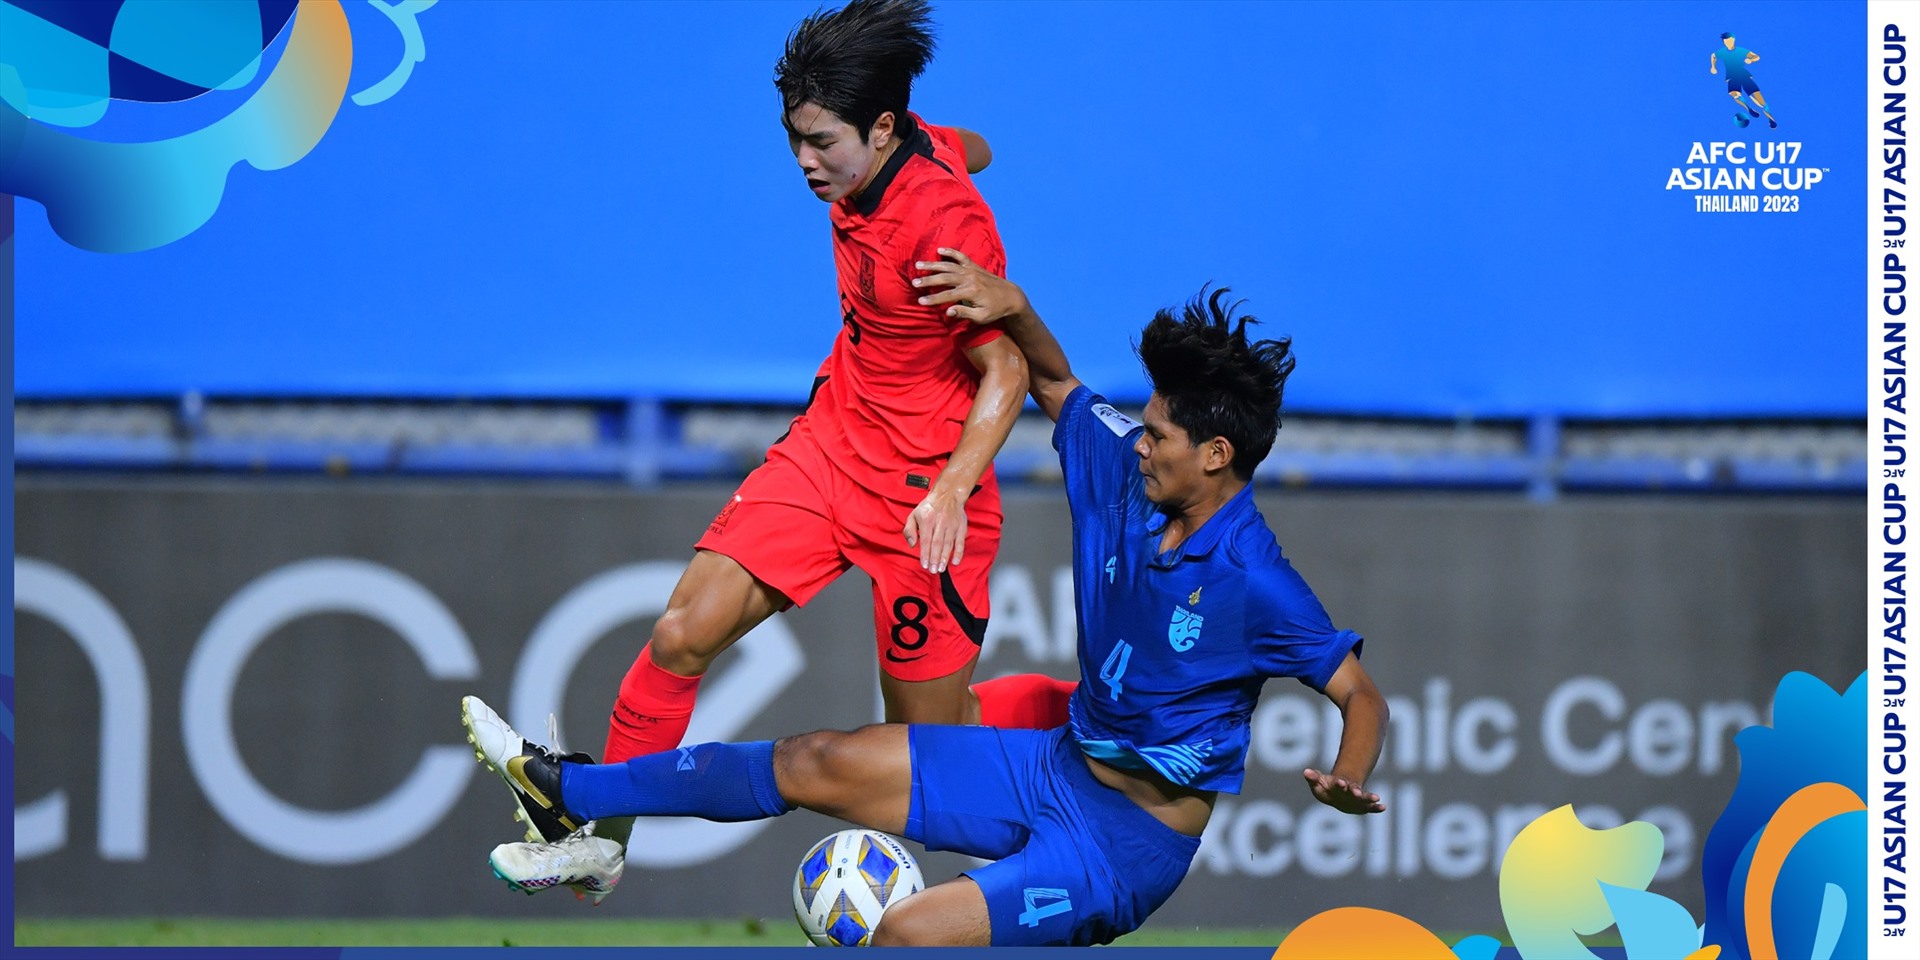 U17 Hàn Quốc (đỏ) giành chiến thắng 4-1 trước U17 Thái Lan. Ảnh: AFC